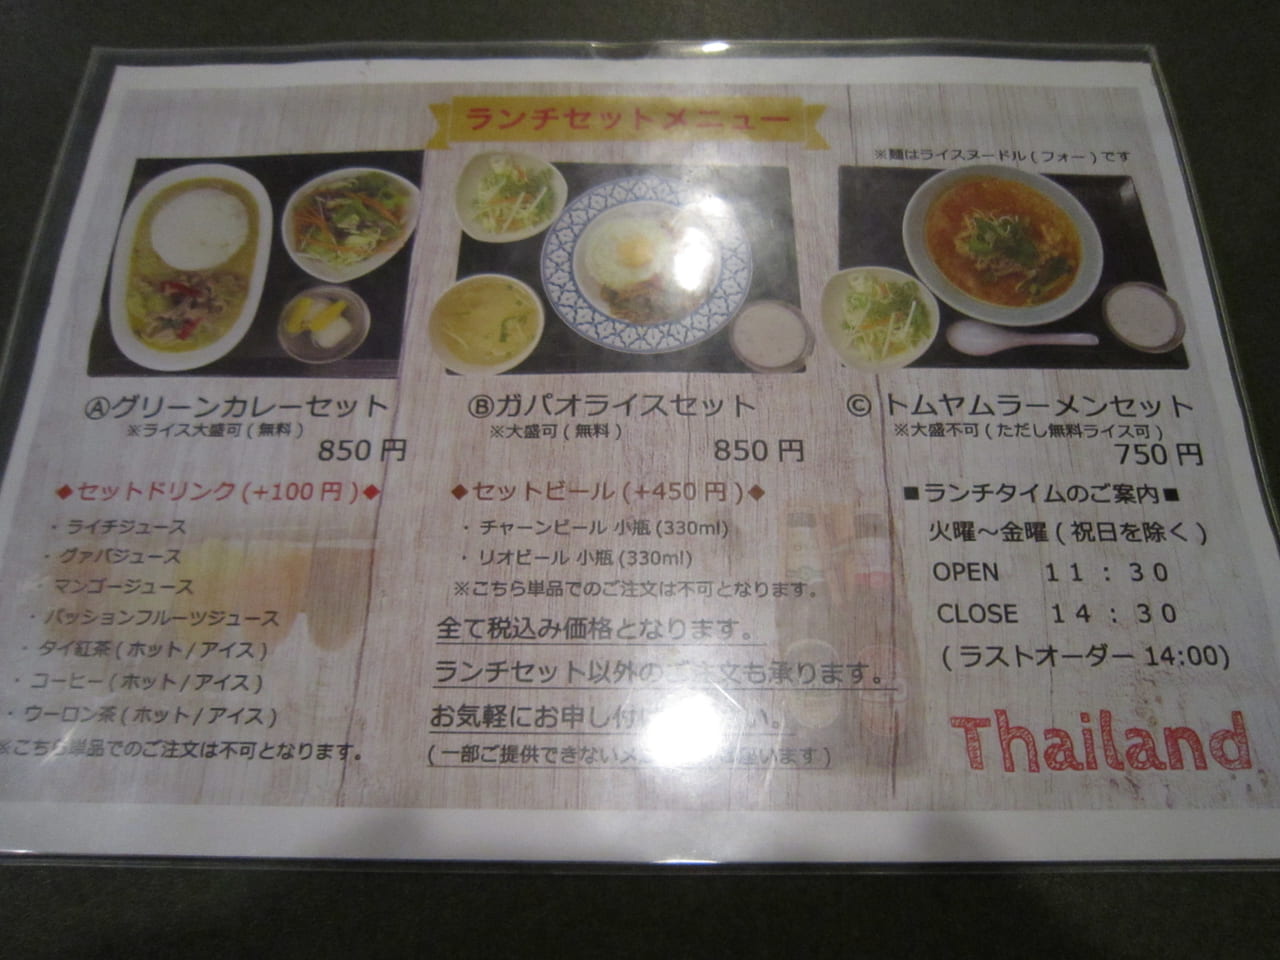 墨田区 錦糸町のタイ料理ランキング1位の タイランド でランチをしてきました 実食レポ 号外net 墨田区